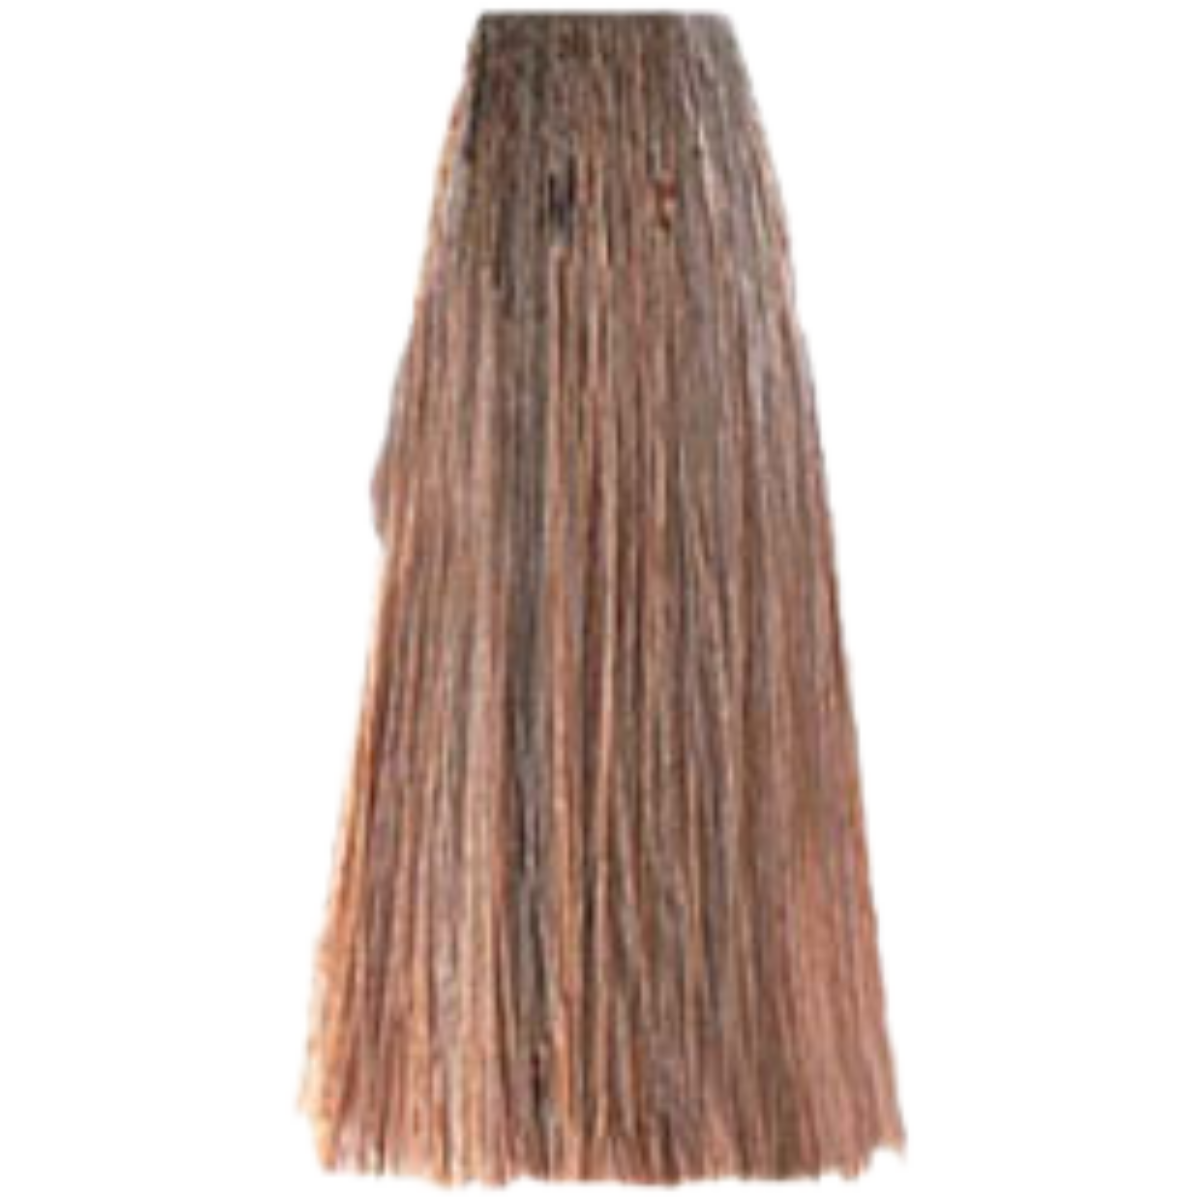 צבע שיער 8.03 WARM LIGHT BLONDE פארמויטה FarmaVita צבע לשיער 100 גרם